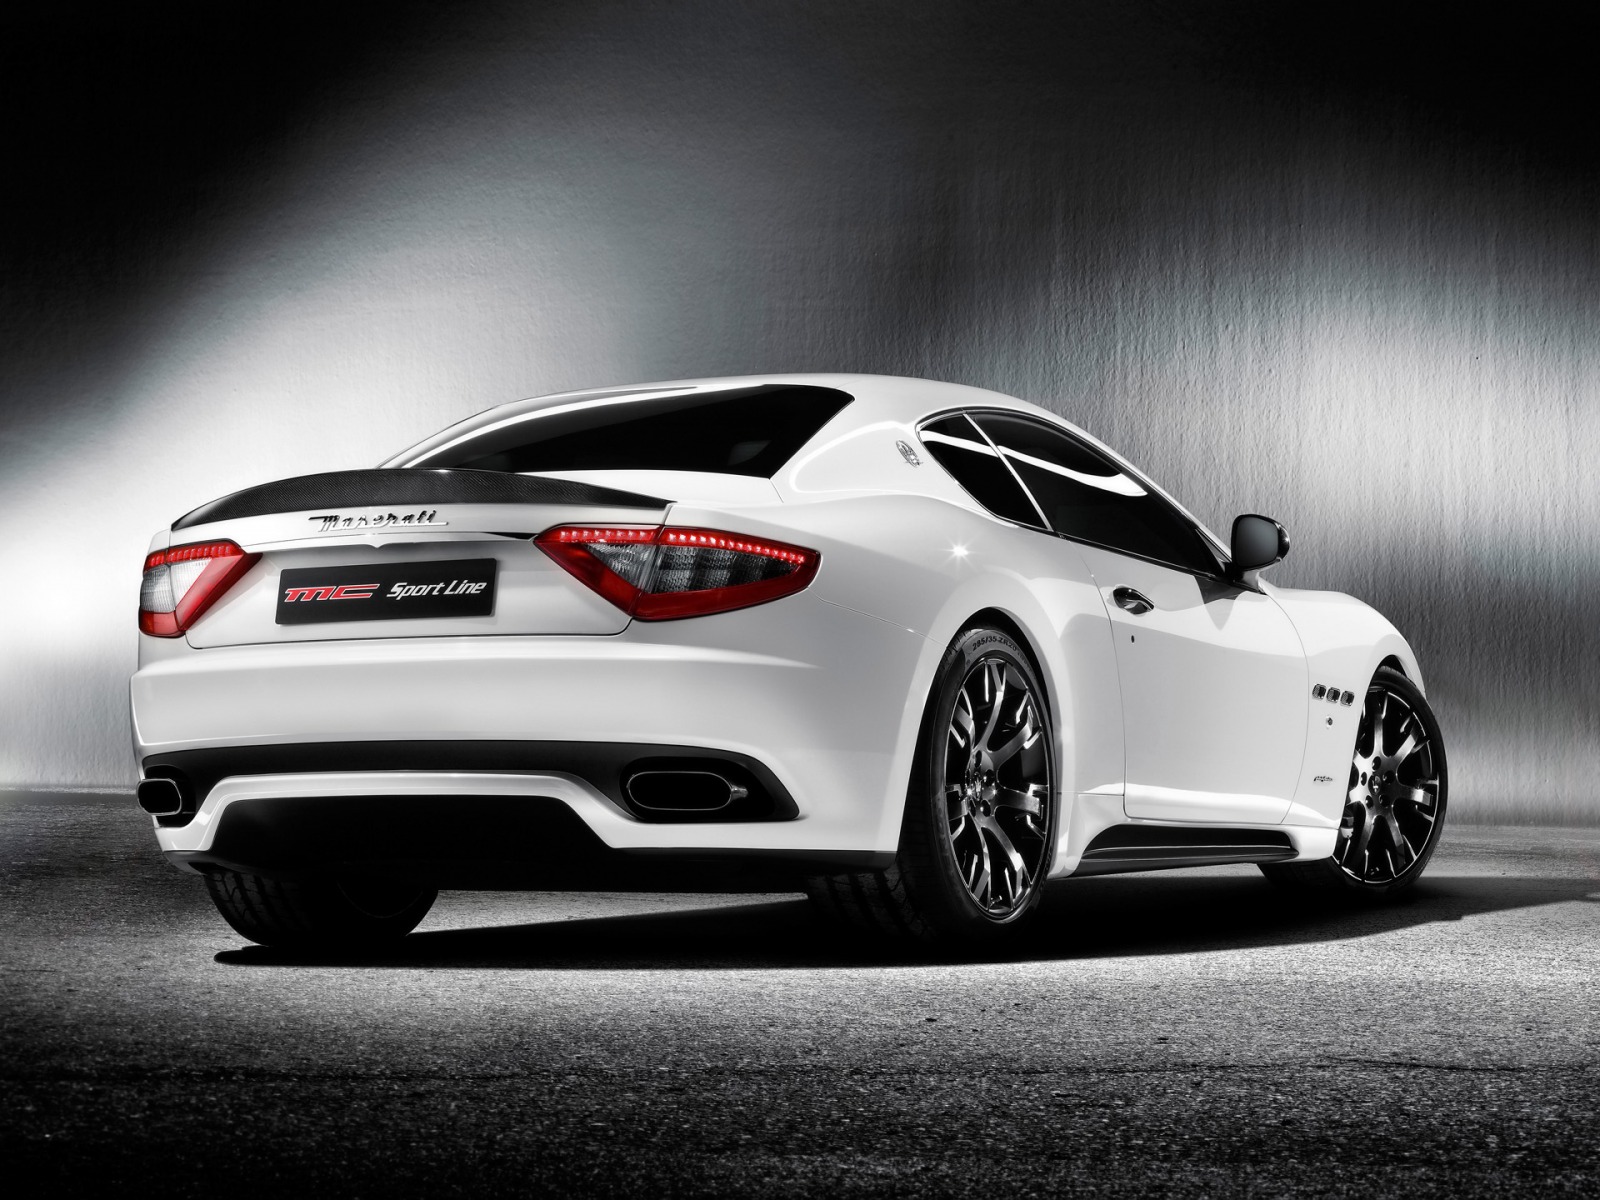 Maserati Granturismo S Mc Sport , HD Wallpaper & Backgrounds